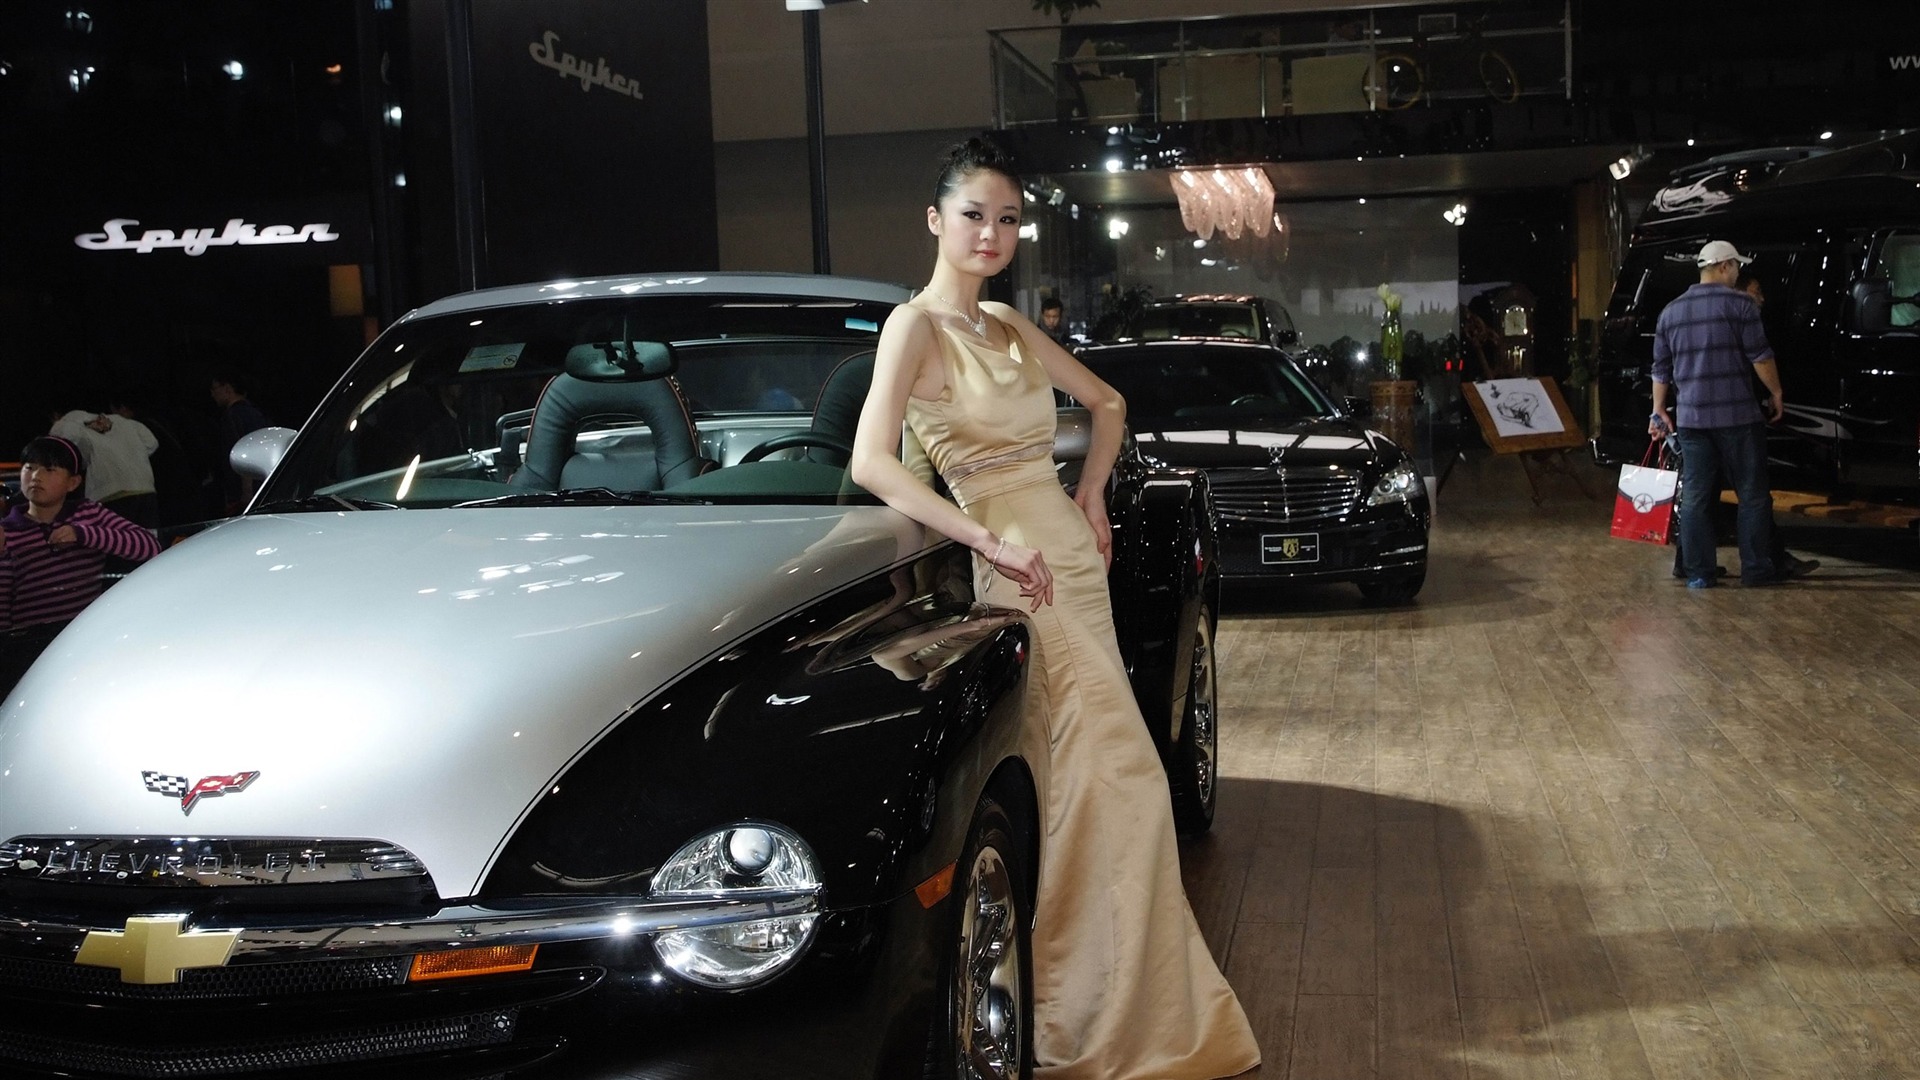 2010北京国际车展 香车美女 (螺纹钢作品)14 - 1920x1080